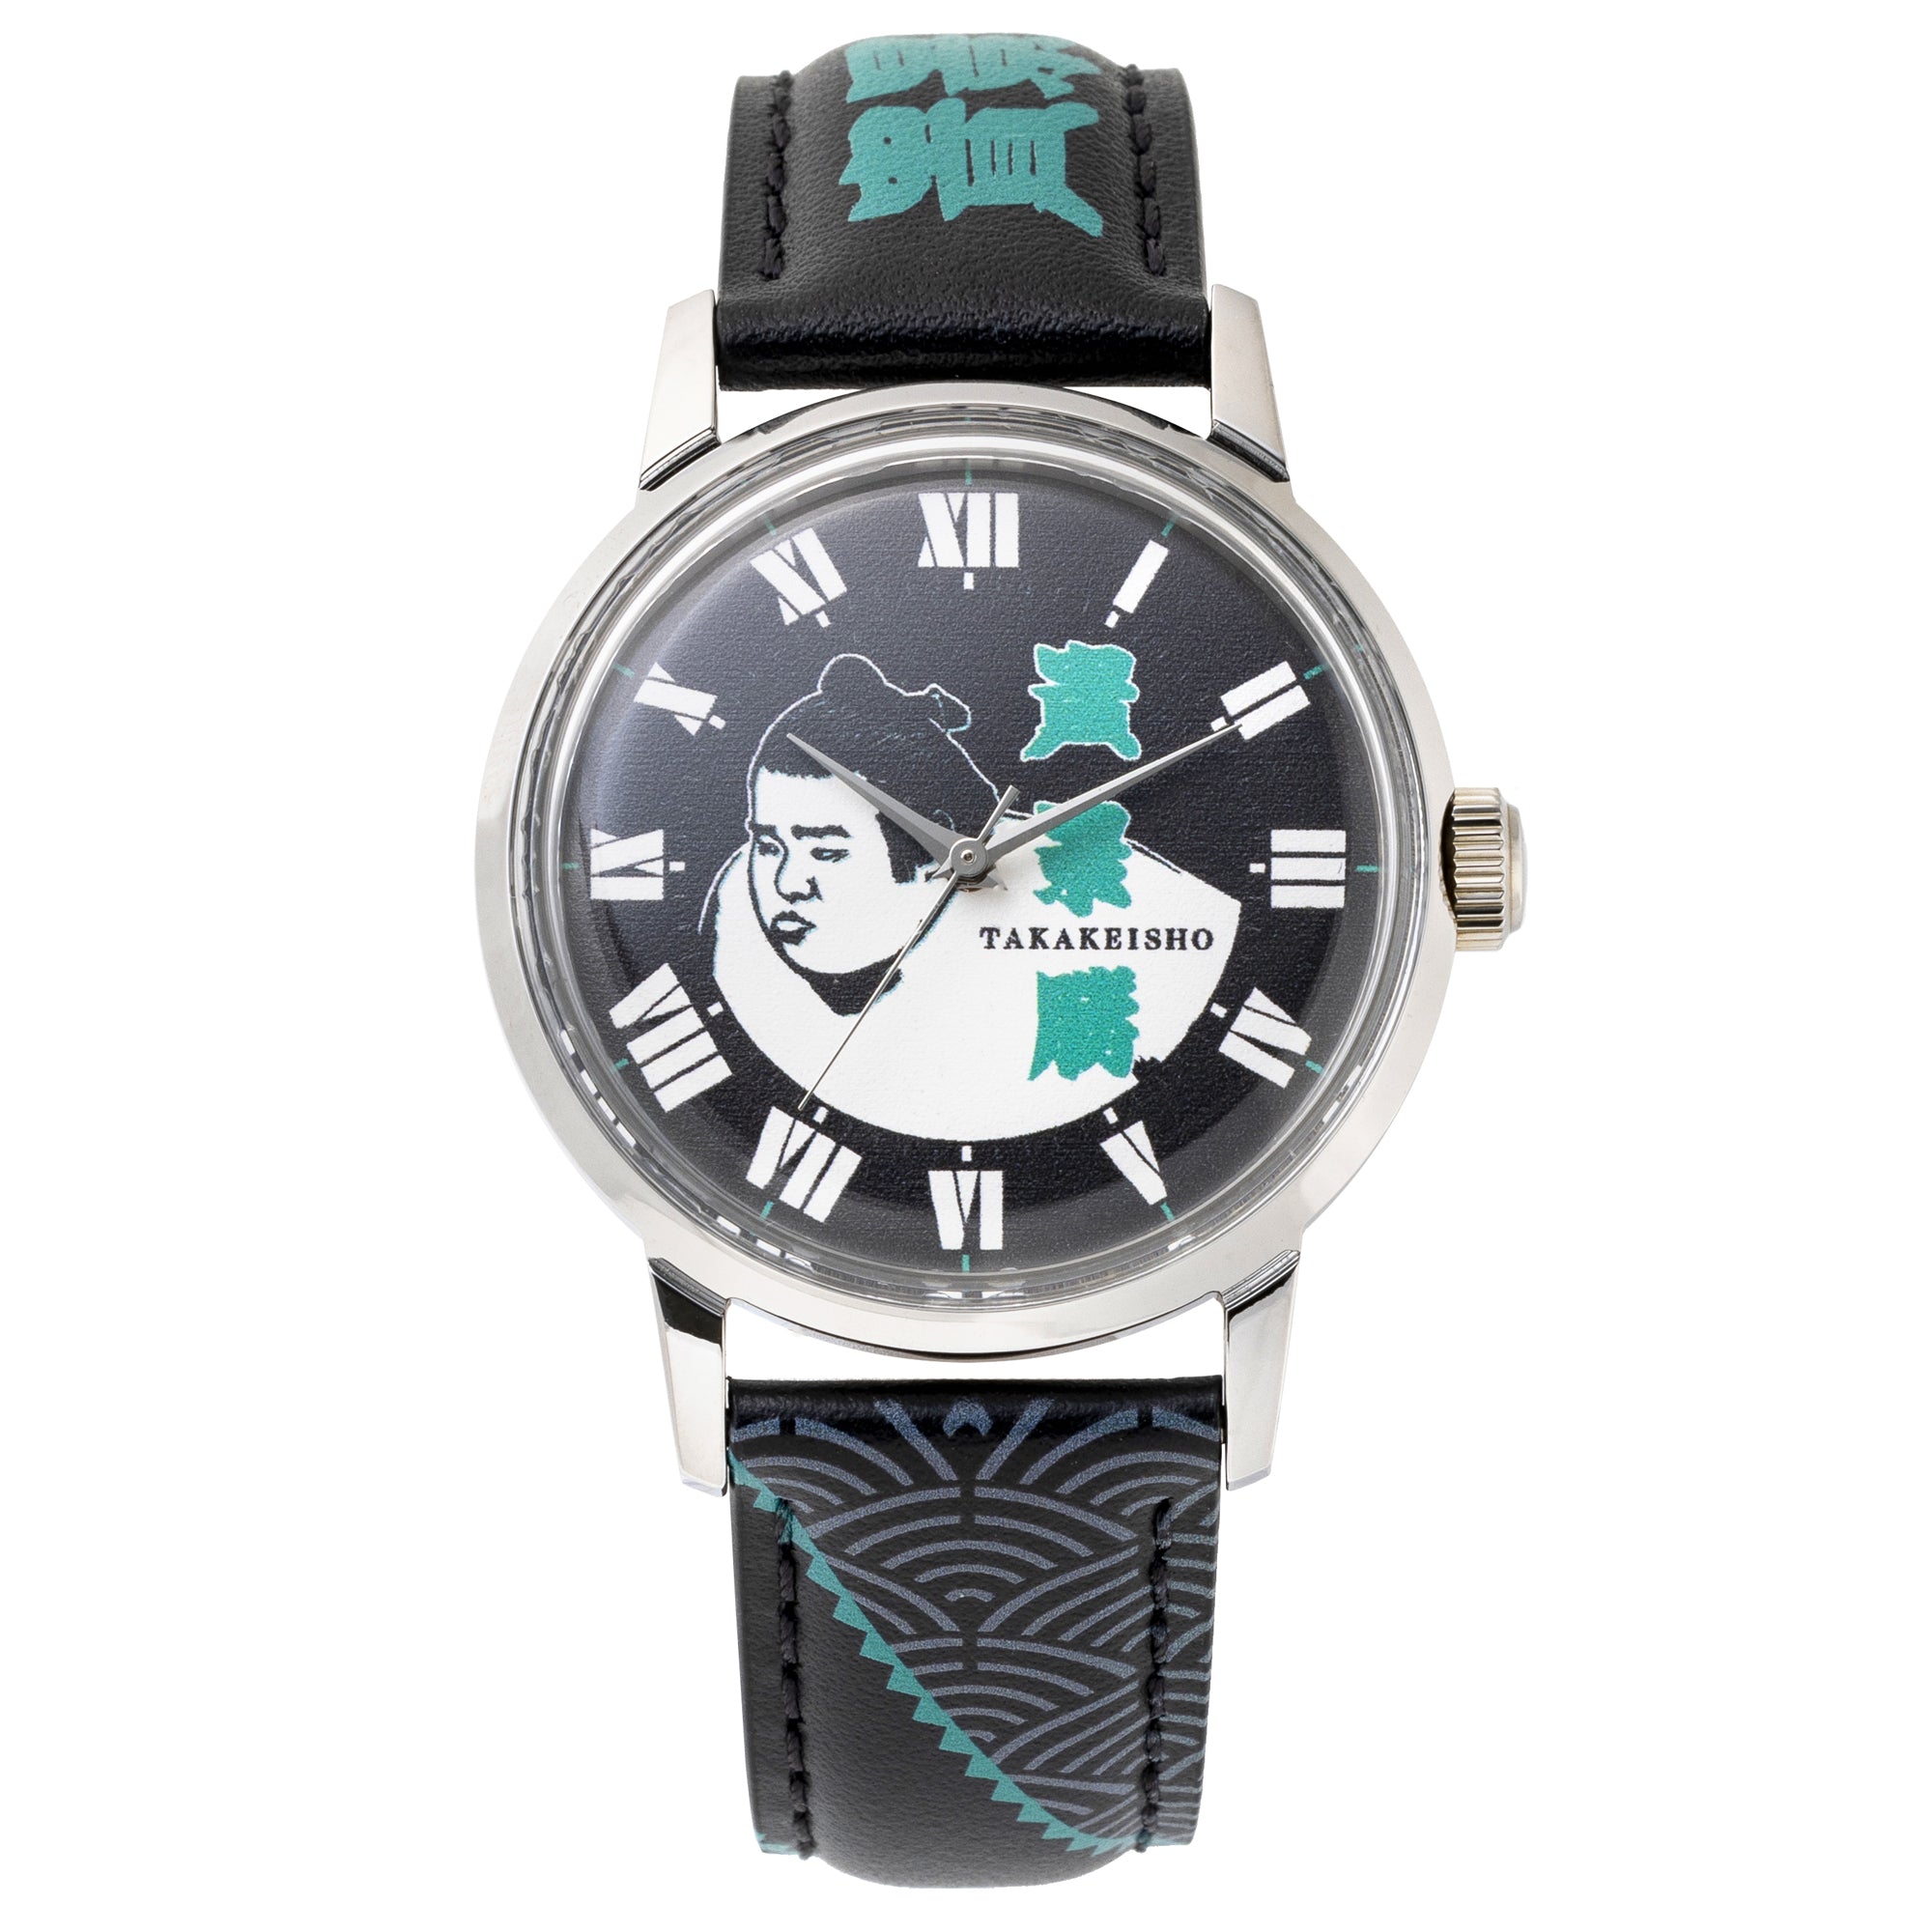 レザーバンド腕時計(LVB140) – お相撲さんのショッピングモール SuMALL